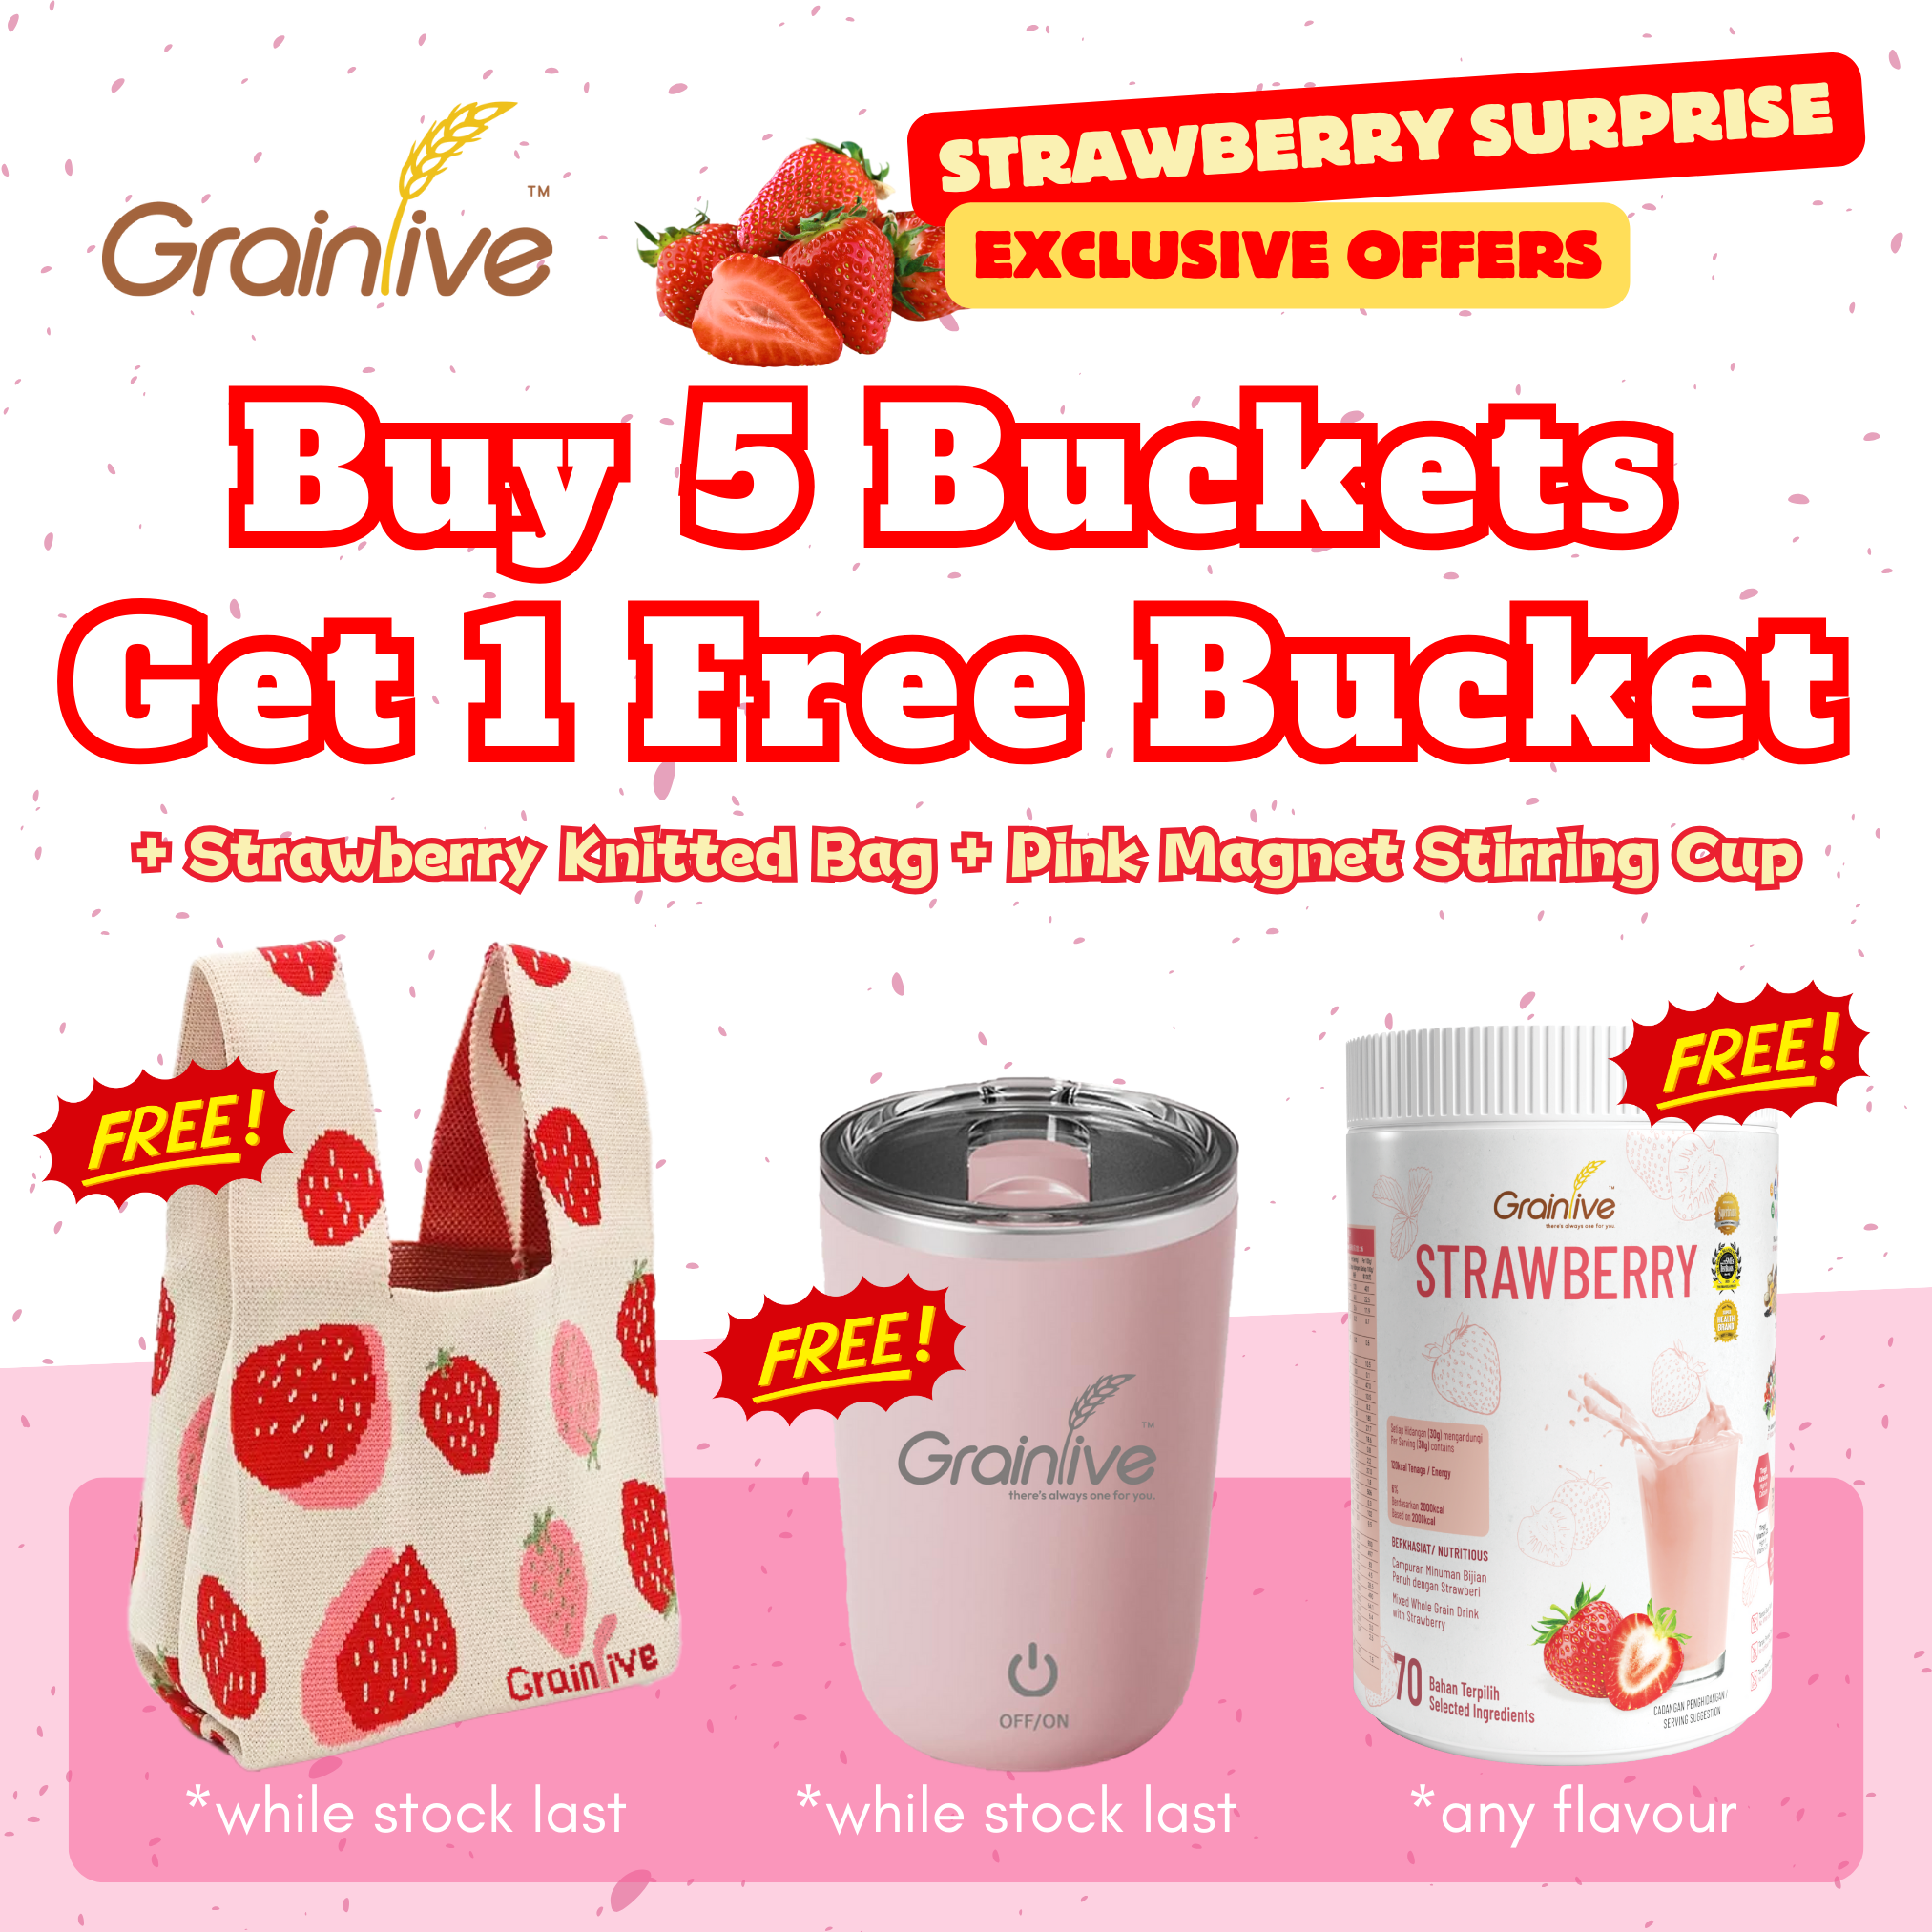 Buy 5 Get 1 Free Plus Free Gifts!